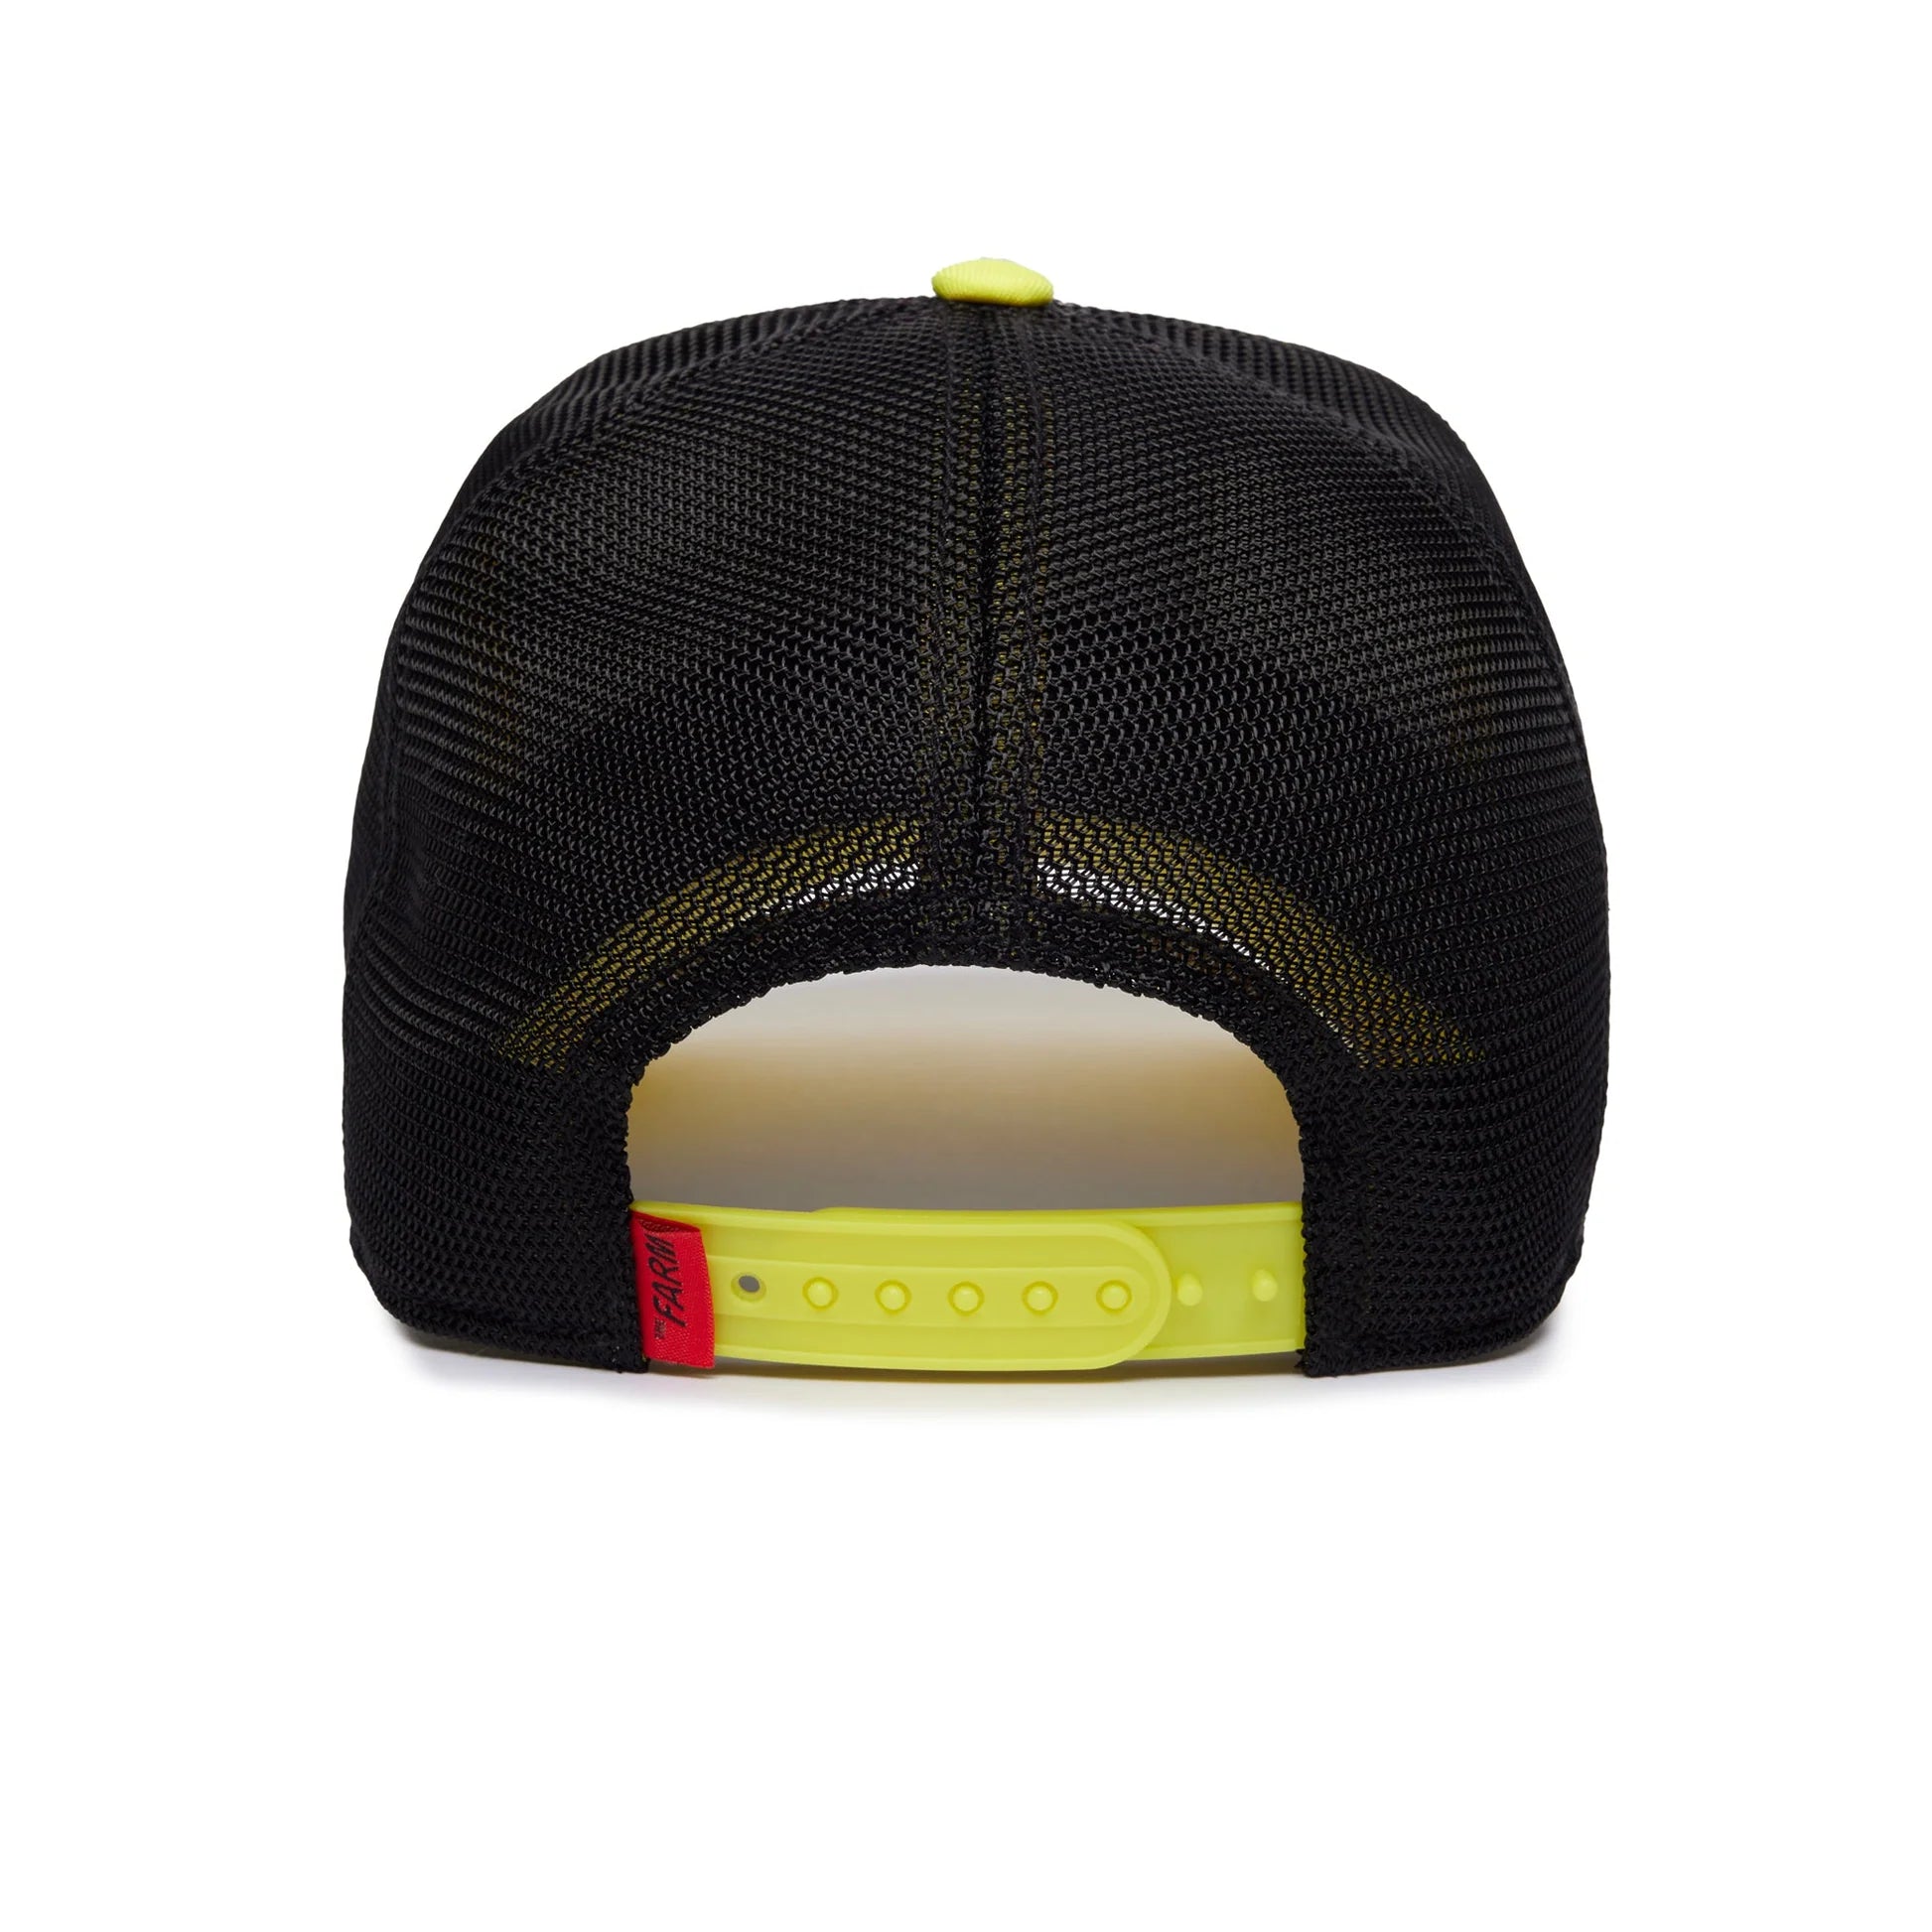 'Goorin Bros. Merriermaker Trucker Hat' in 'Yellow' colour